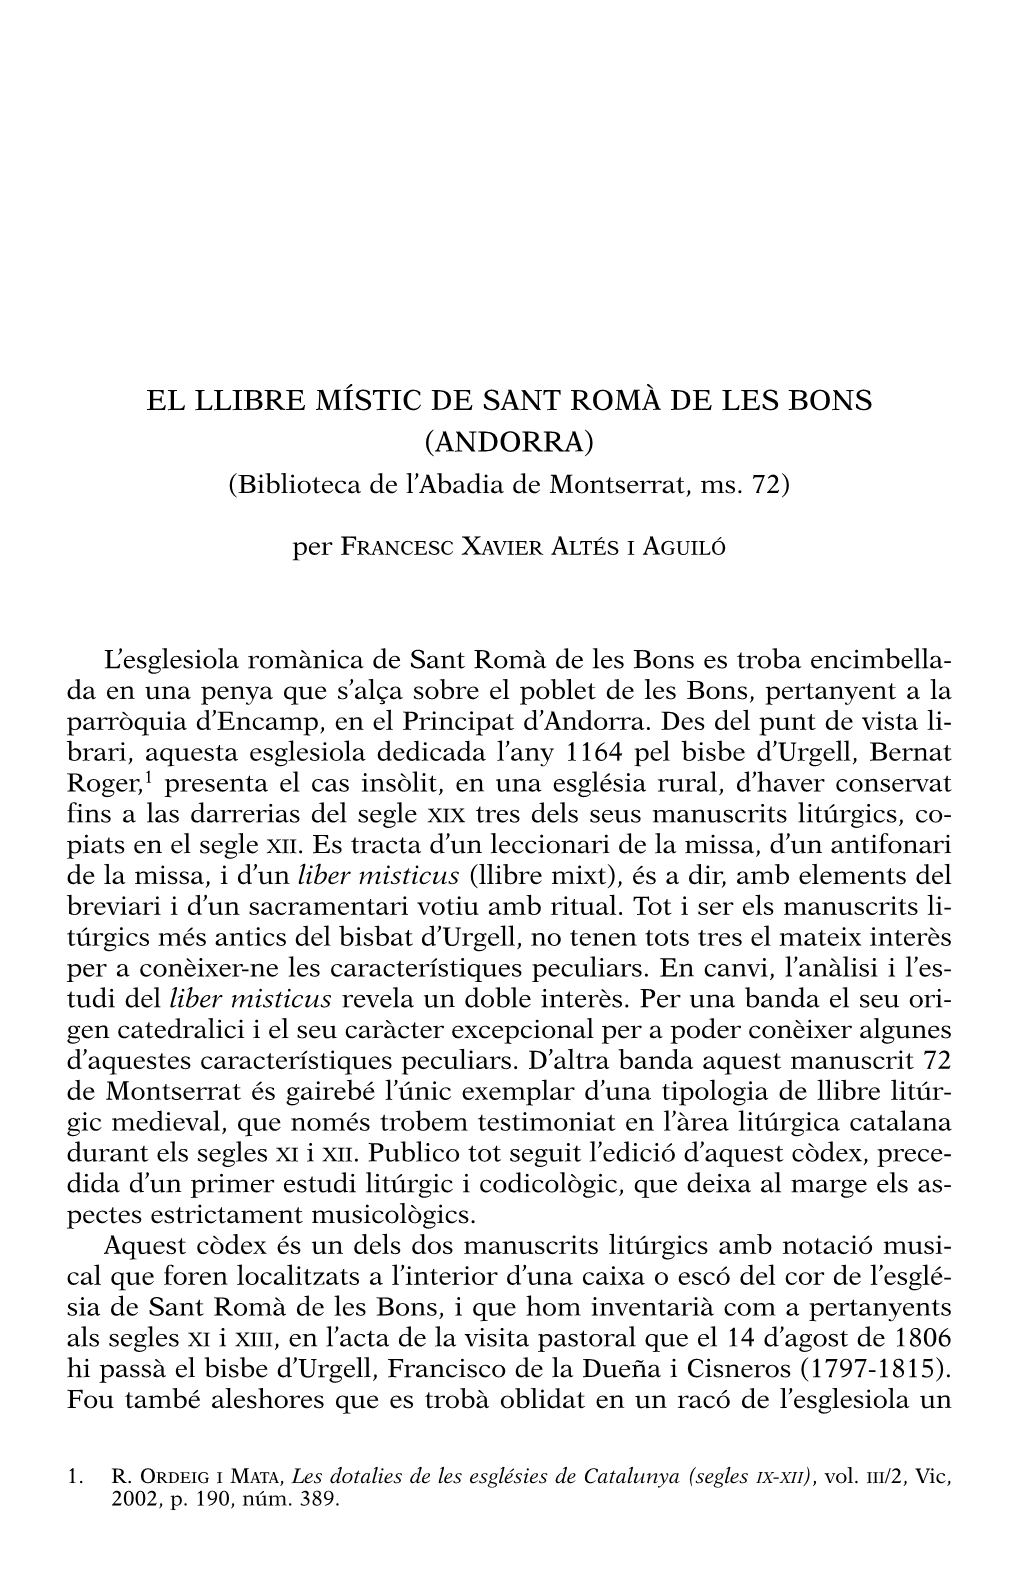 EL LLIBRE MÍSTIC DE SANT ROMÀ DE LES BONS (ANDORRA) (Biblioteca De L’Abadia De Montserrat, Ms